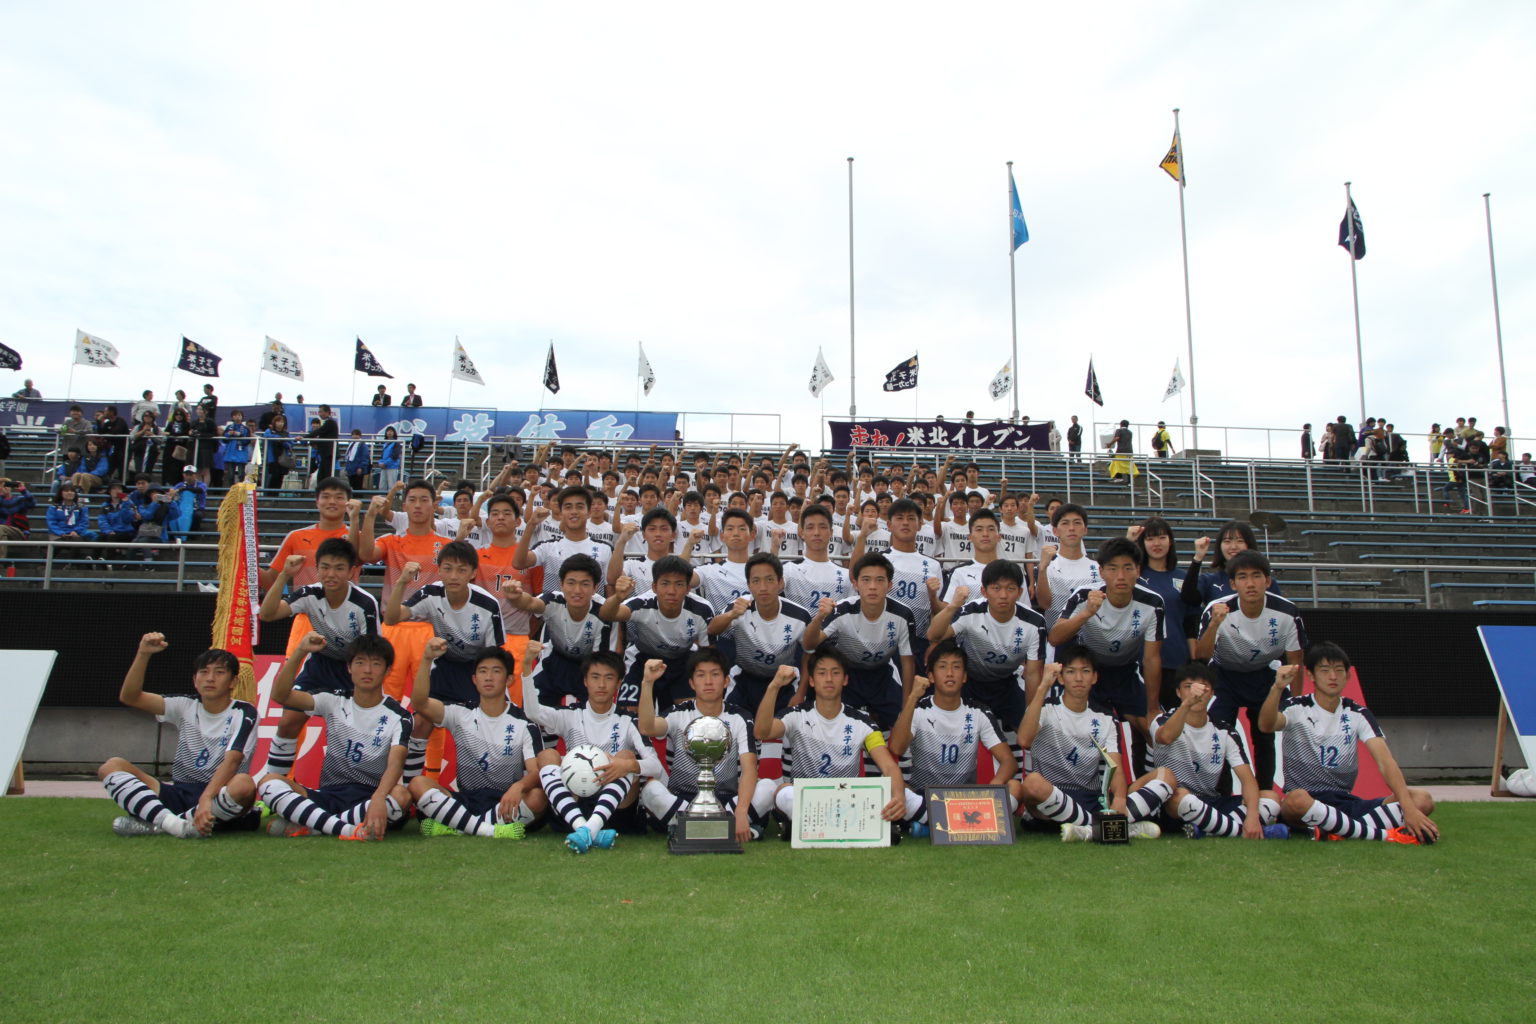 第98回 全国高校サッカー選手権鳥取県大会 10連覇達成 米子北高等学校